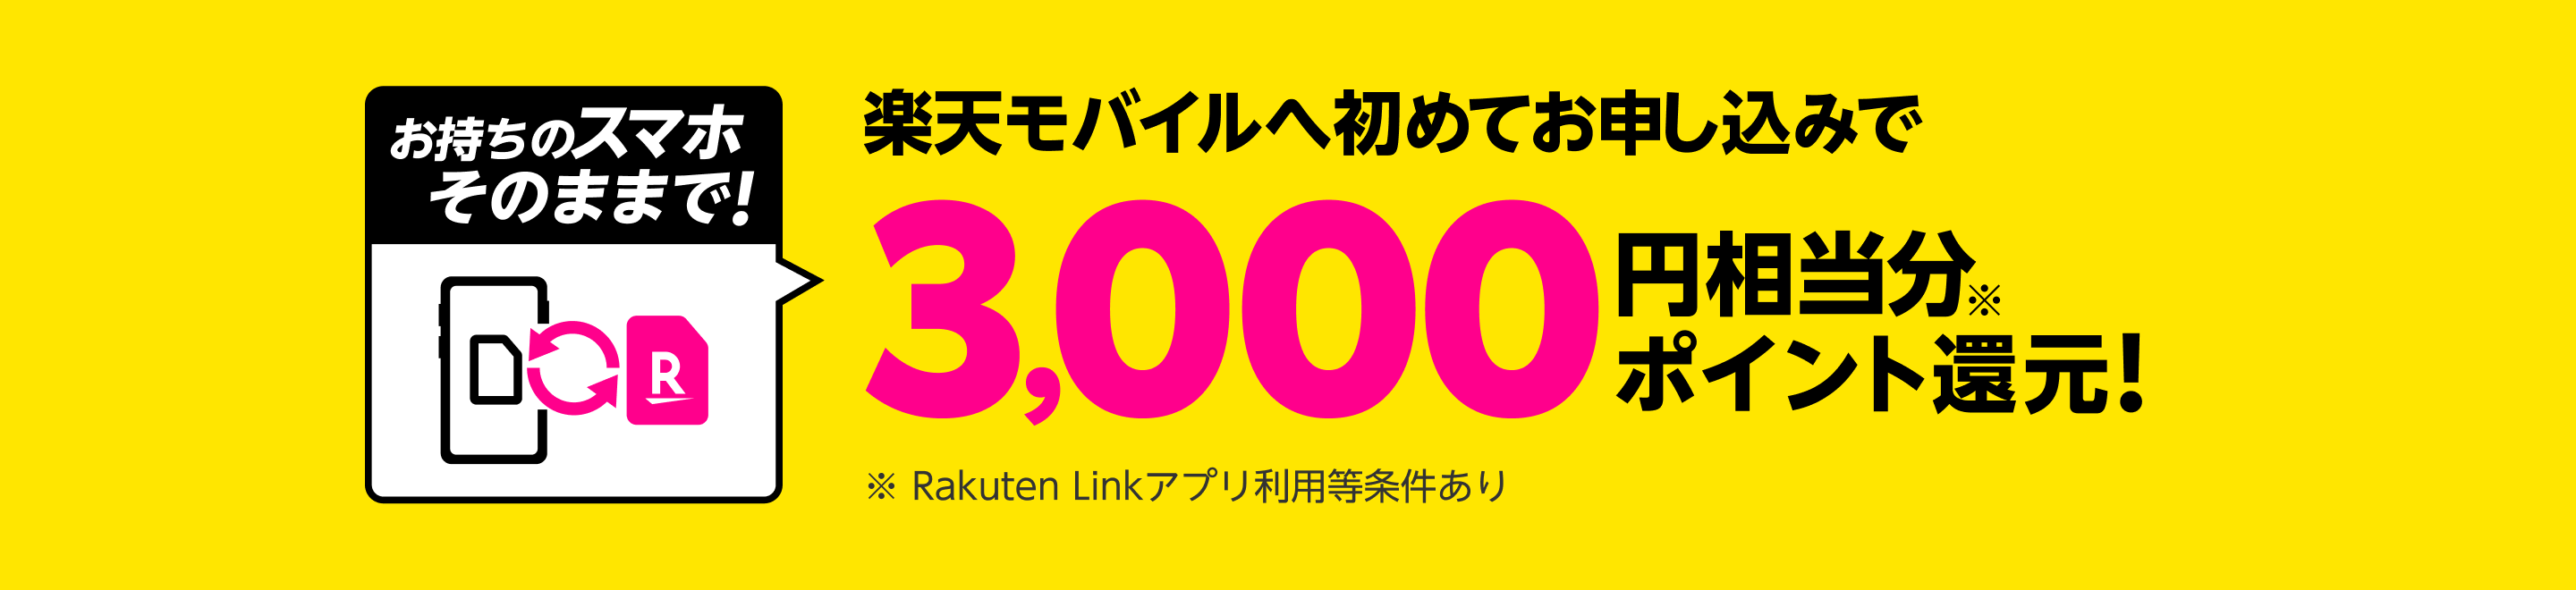 楽天モバイルへ初めてお申し込みで3,000円相当分ポイント還元!